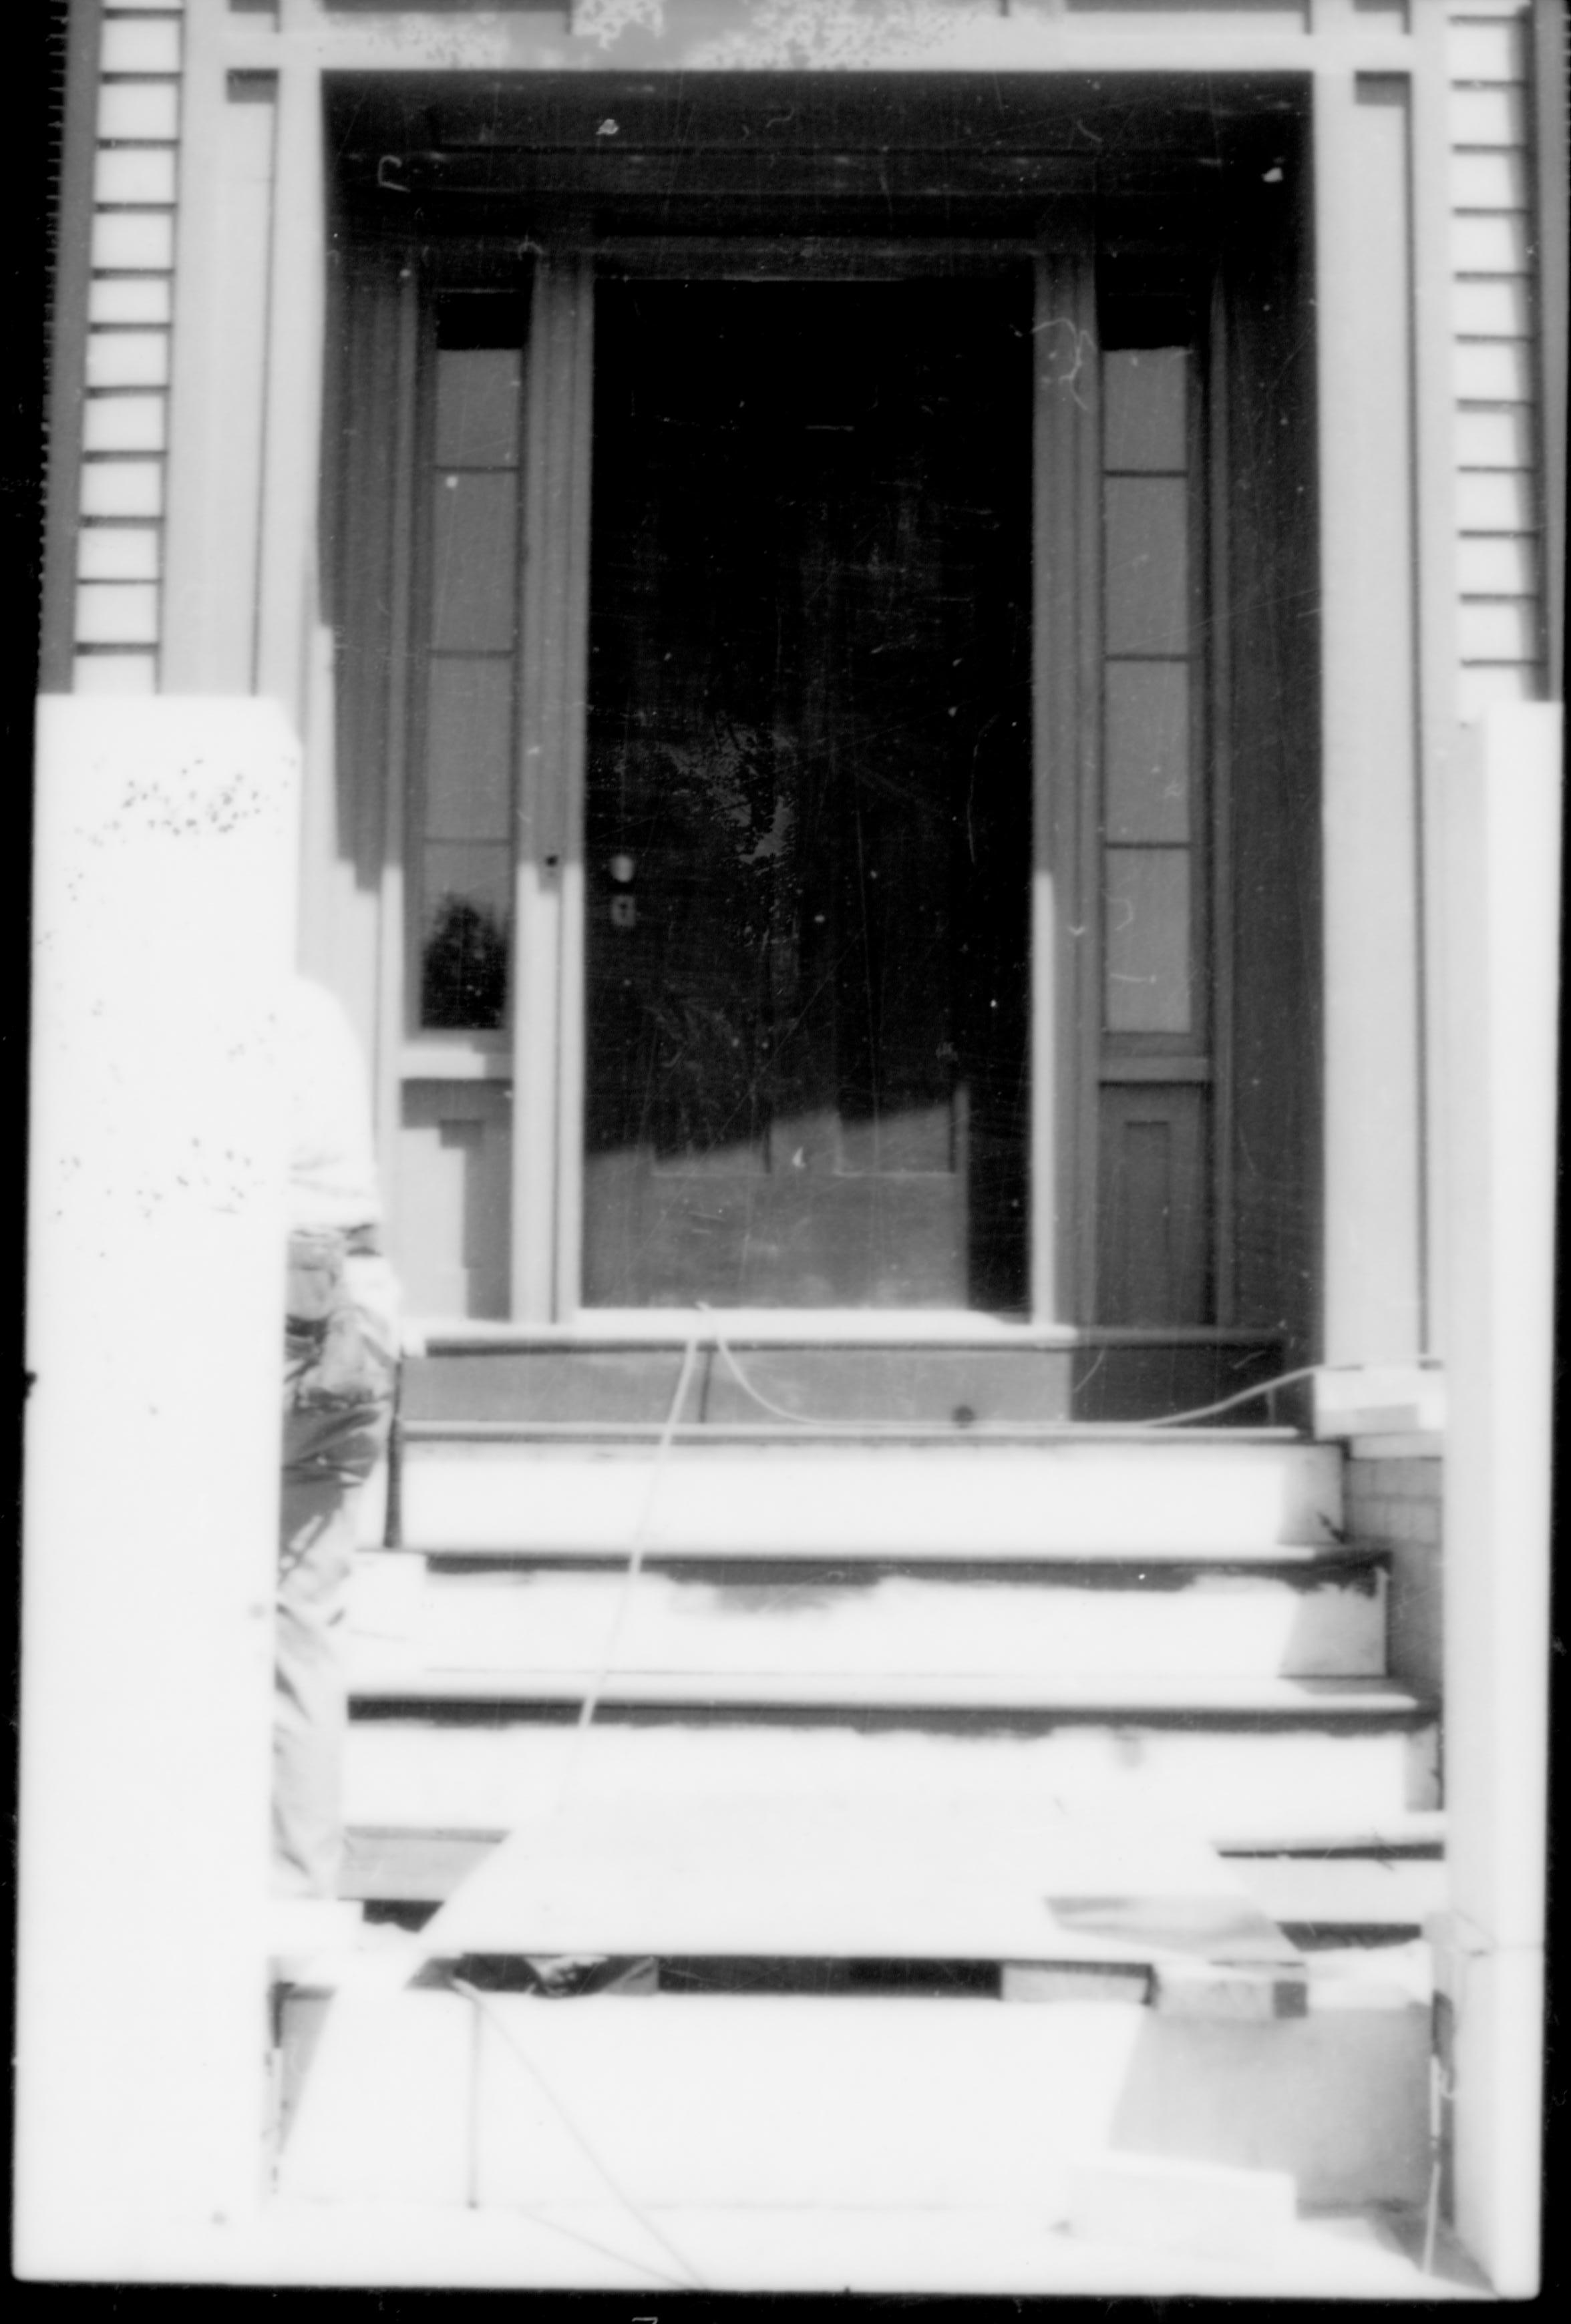 NA Lincoln, Home, Restoration, Front Steps